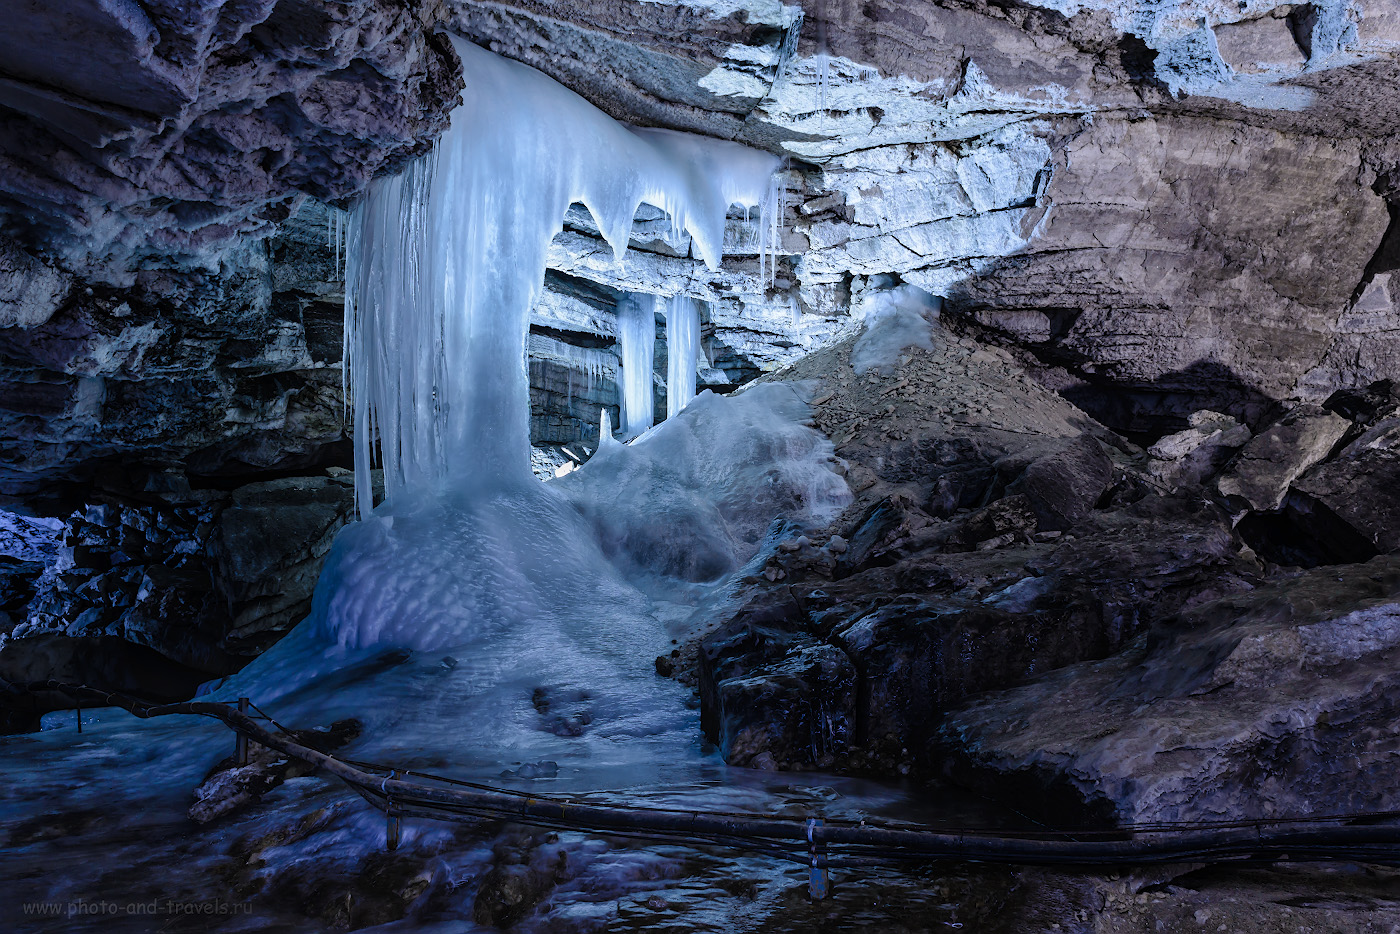 Фотография 9. Теперь понимаете, почему Кунгурскую пещеру называют Ледяной? Отзыв о самостоятельной экскурсии. 2.5, 8.0, 400, 24.